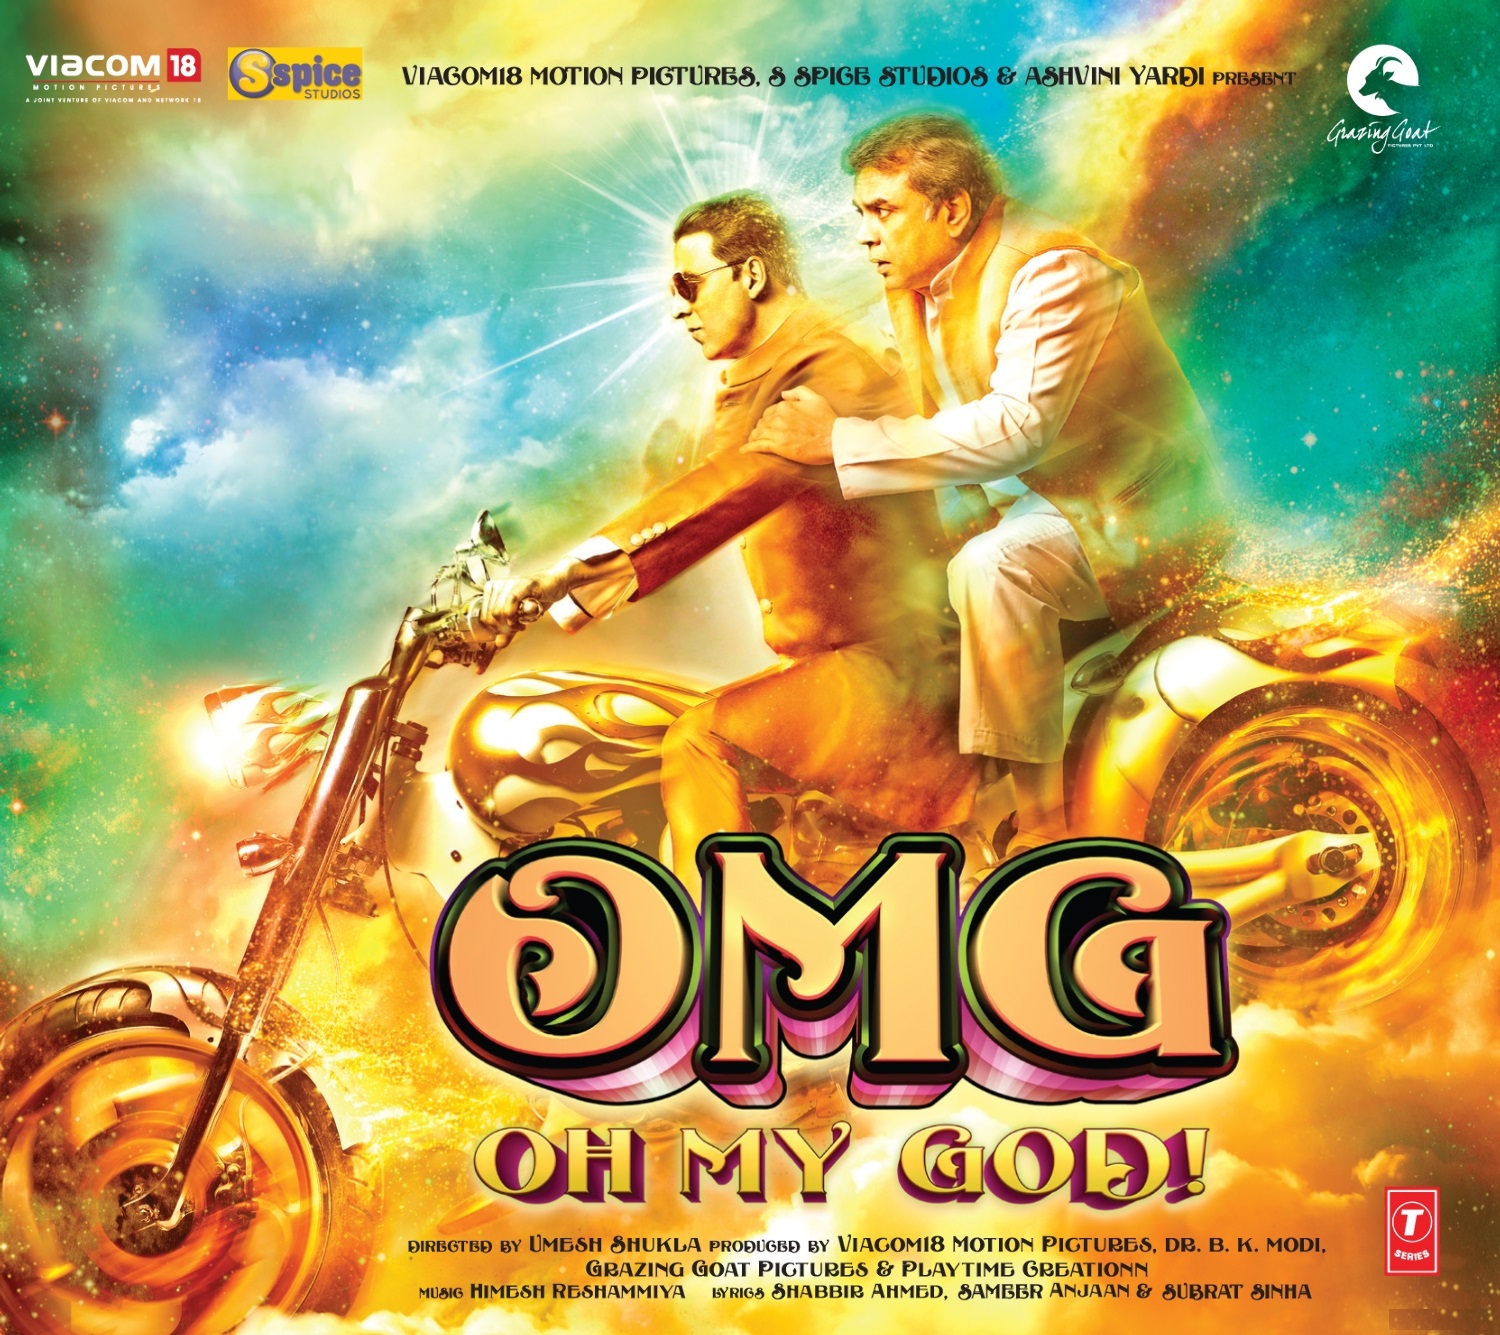 परेश रावल आणि अक्षय कुमार यांची मुख्य भूमिका असलेल्या ‘ओह माय गॉड’ हा चित्रपट भारतात यशस्वी ठरला असला तरी संयुक्त अरब अमिरातीमध्ये (UAE) या चित्रपटावर बंदी आहे.